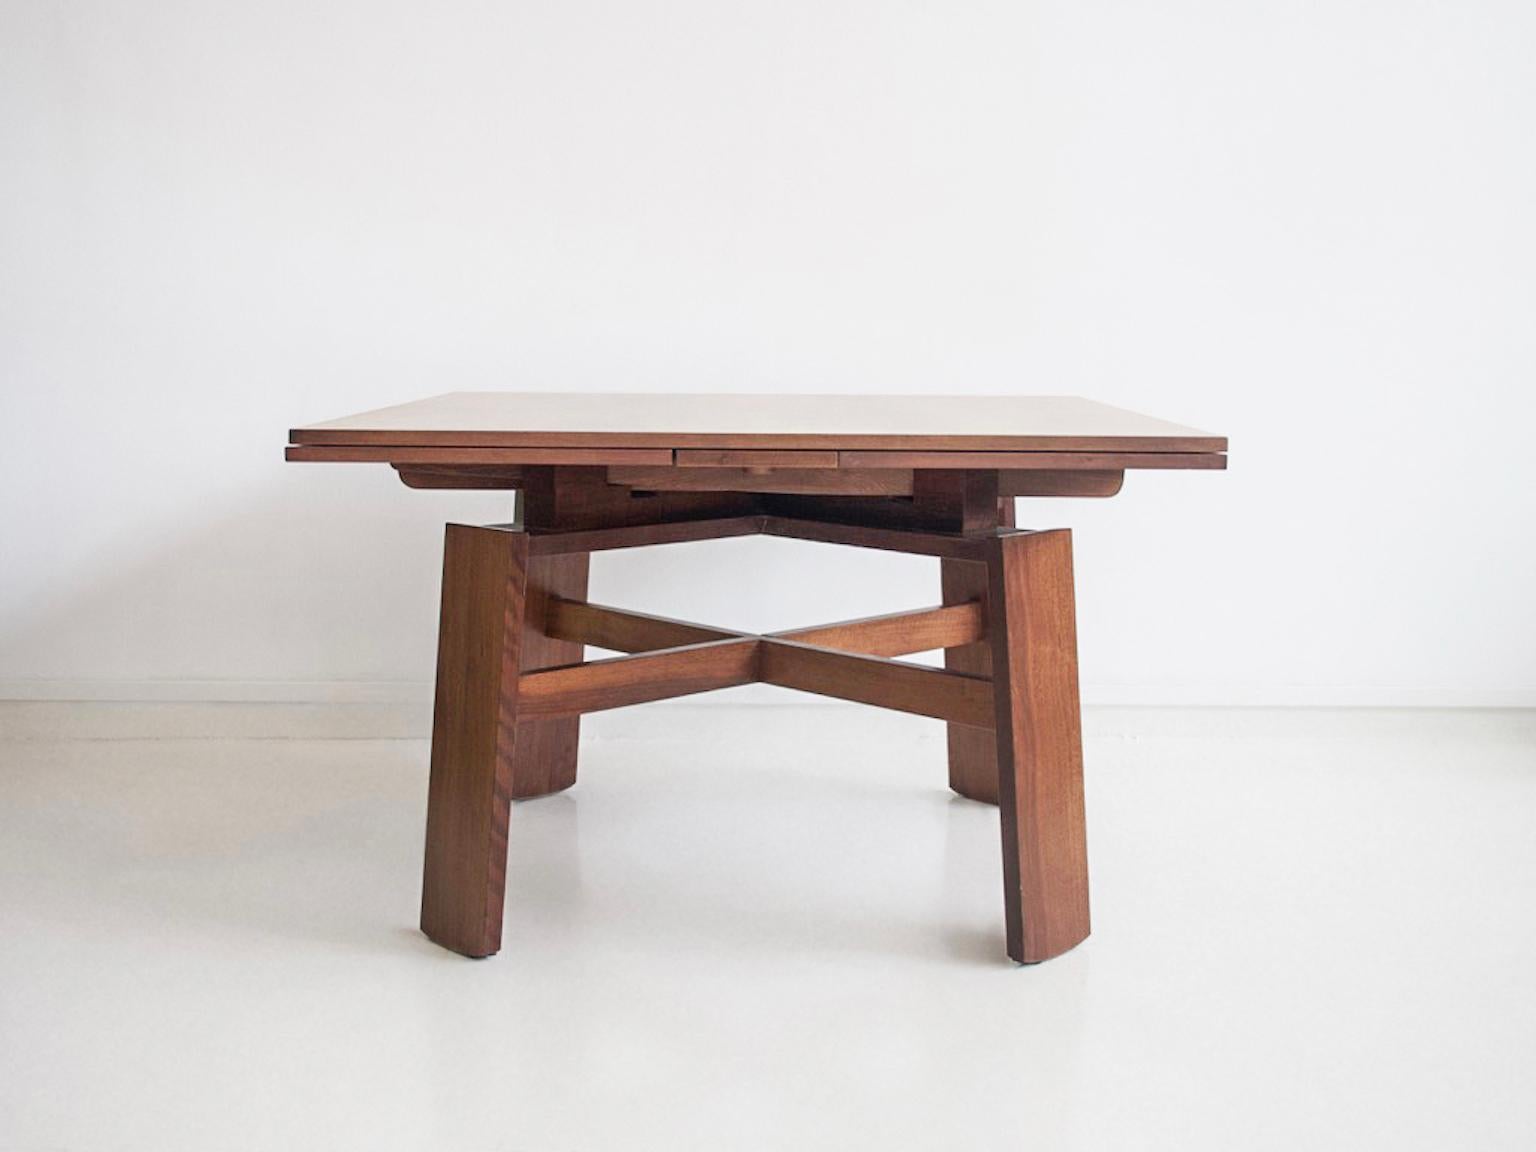 Square walnut table, model 612, designed by Silvio Coppola in 1964. Manufactured by Bernini in Italy. Extendable into a large dining table.

Literature: G. Gramigna, Repertorio del Design Italiano 1950-2000 per l'Arredamento Domestico, Torino